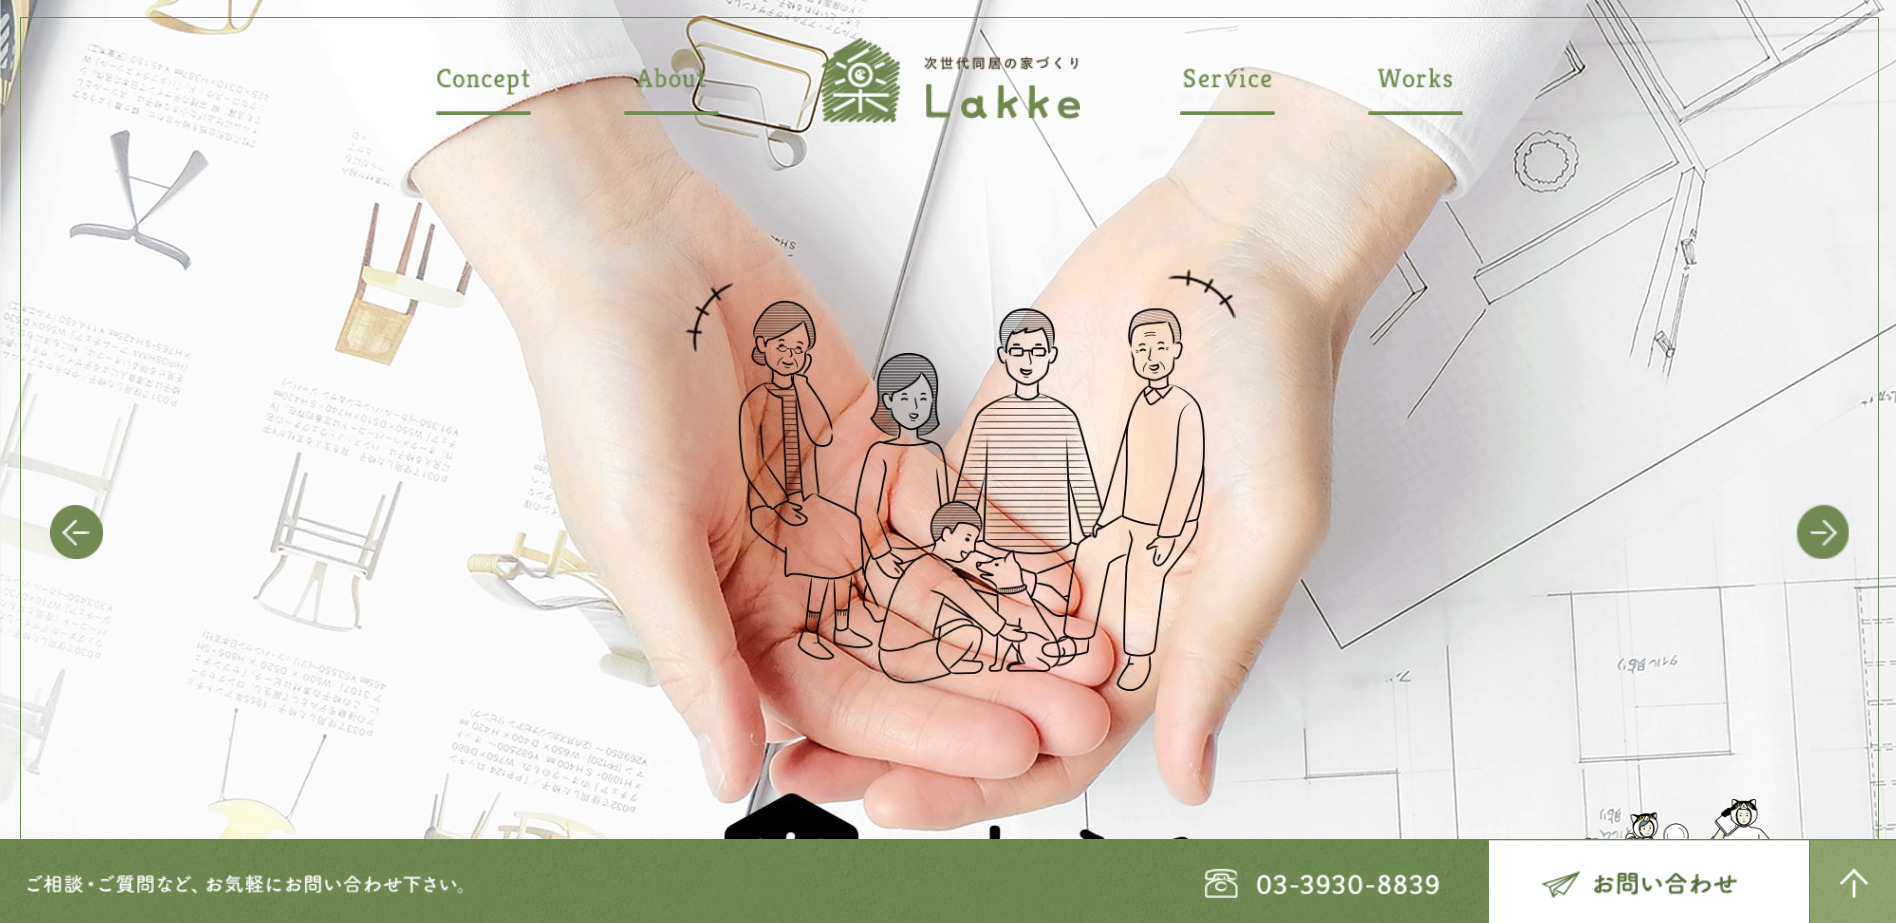 5.株式会社Lakke